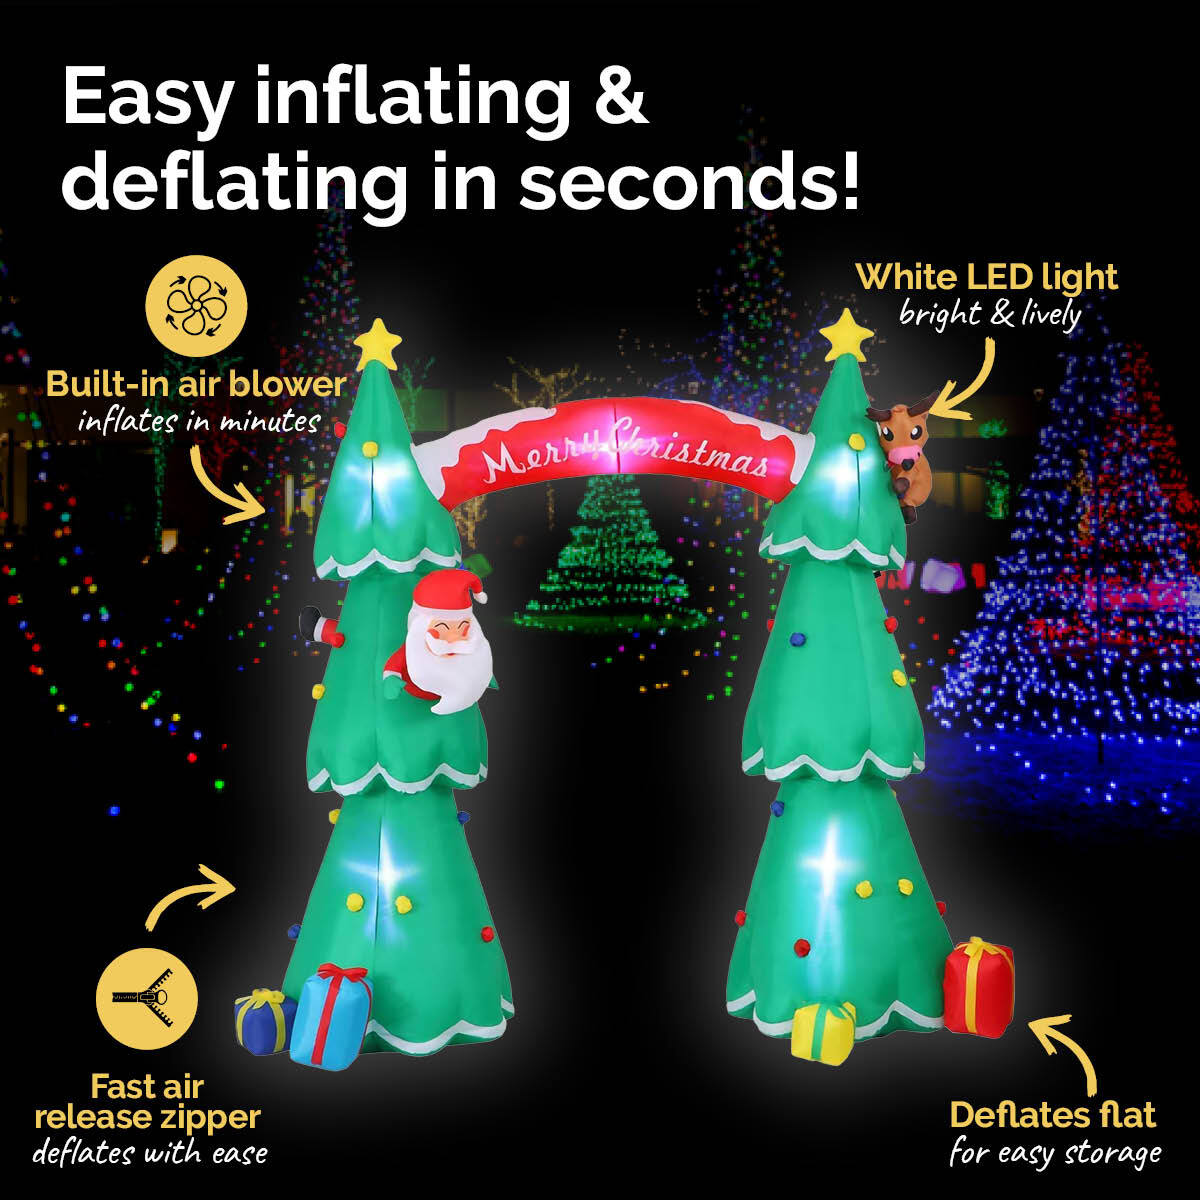 Christmas By Sas 3m x 2.4m Christmas Tree Arch Self Inflating LED Lights